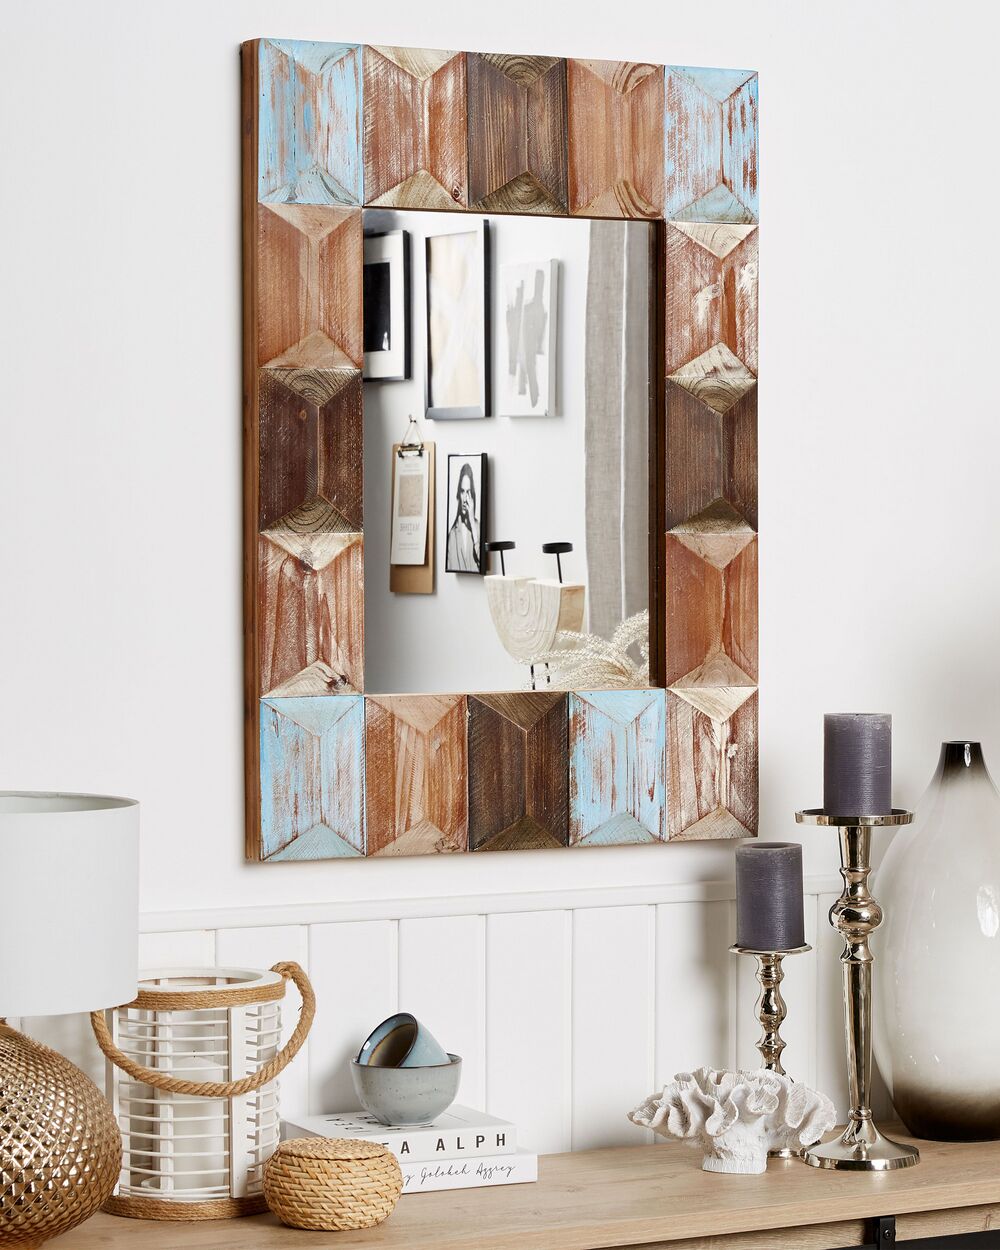 Specchio moderno da parete con cornice bianca 61 x 91 cm LUNEL 